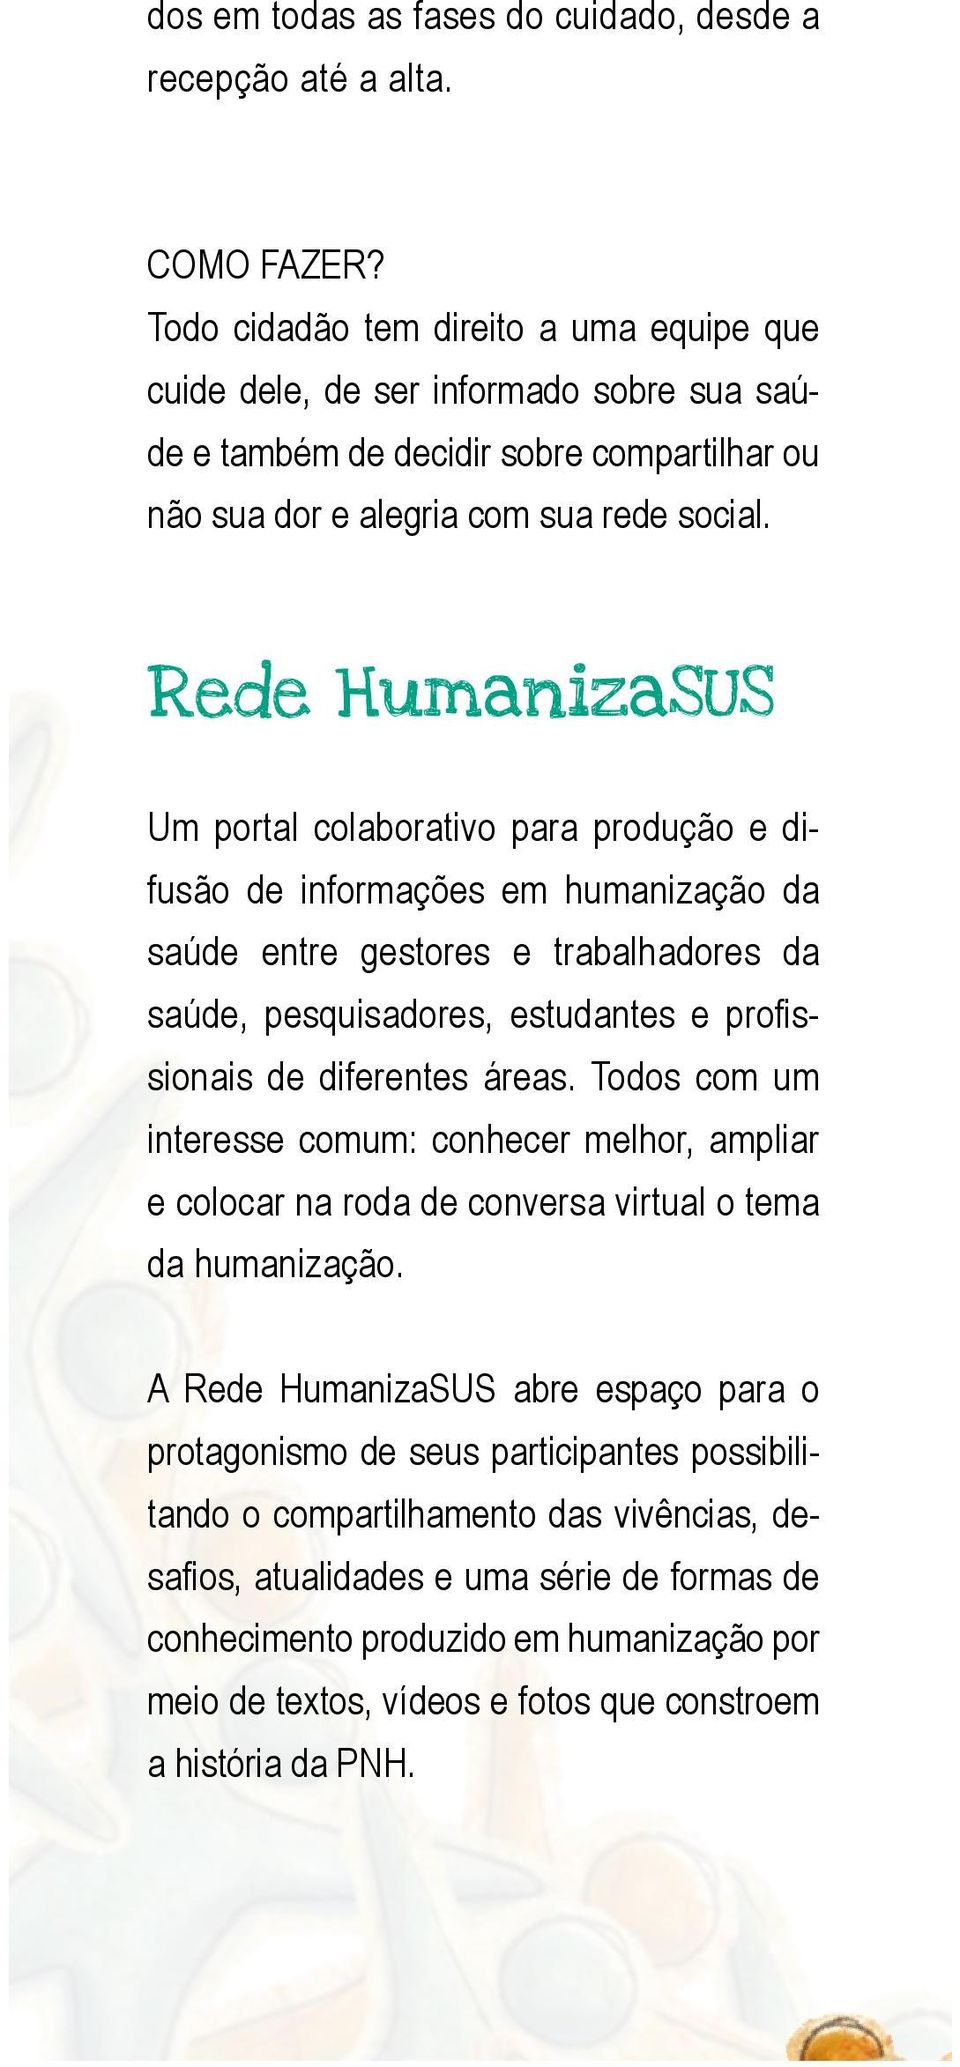 Rede HumanizaSUS Um portal colaborativo para produção e difusão de informações em humanização da saúde entre gestores e trabalhadores da saúde, pesquisadores, estudantes e profissionais de diferentes